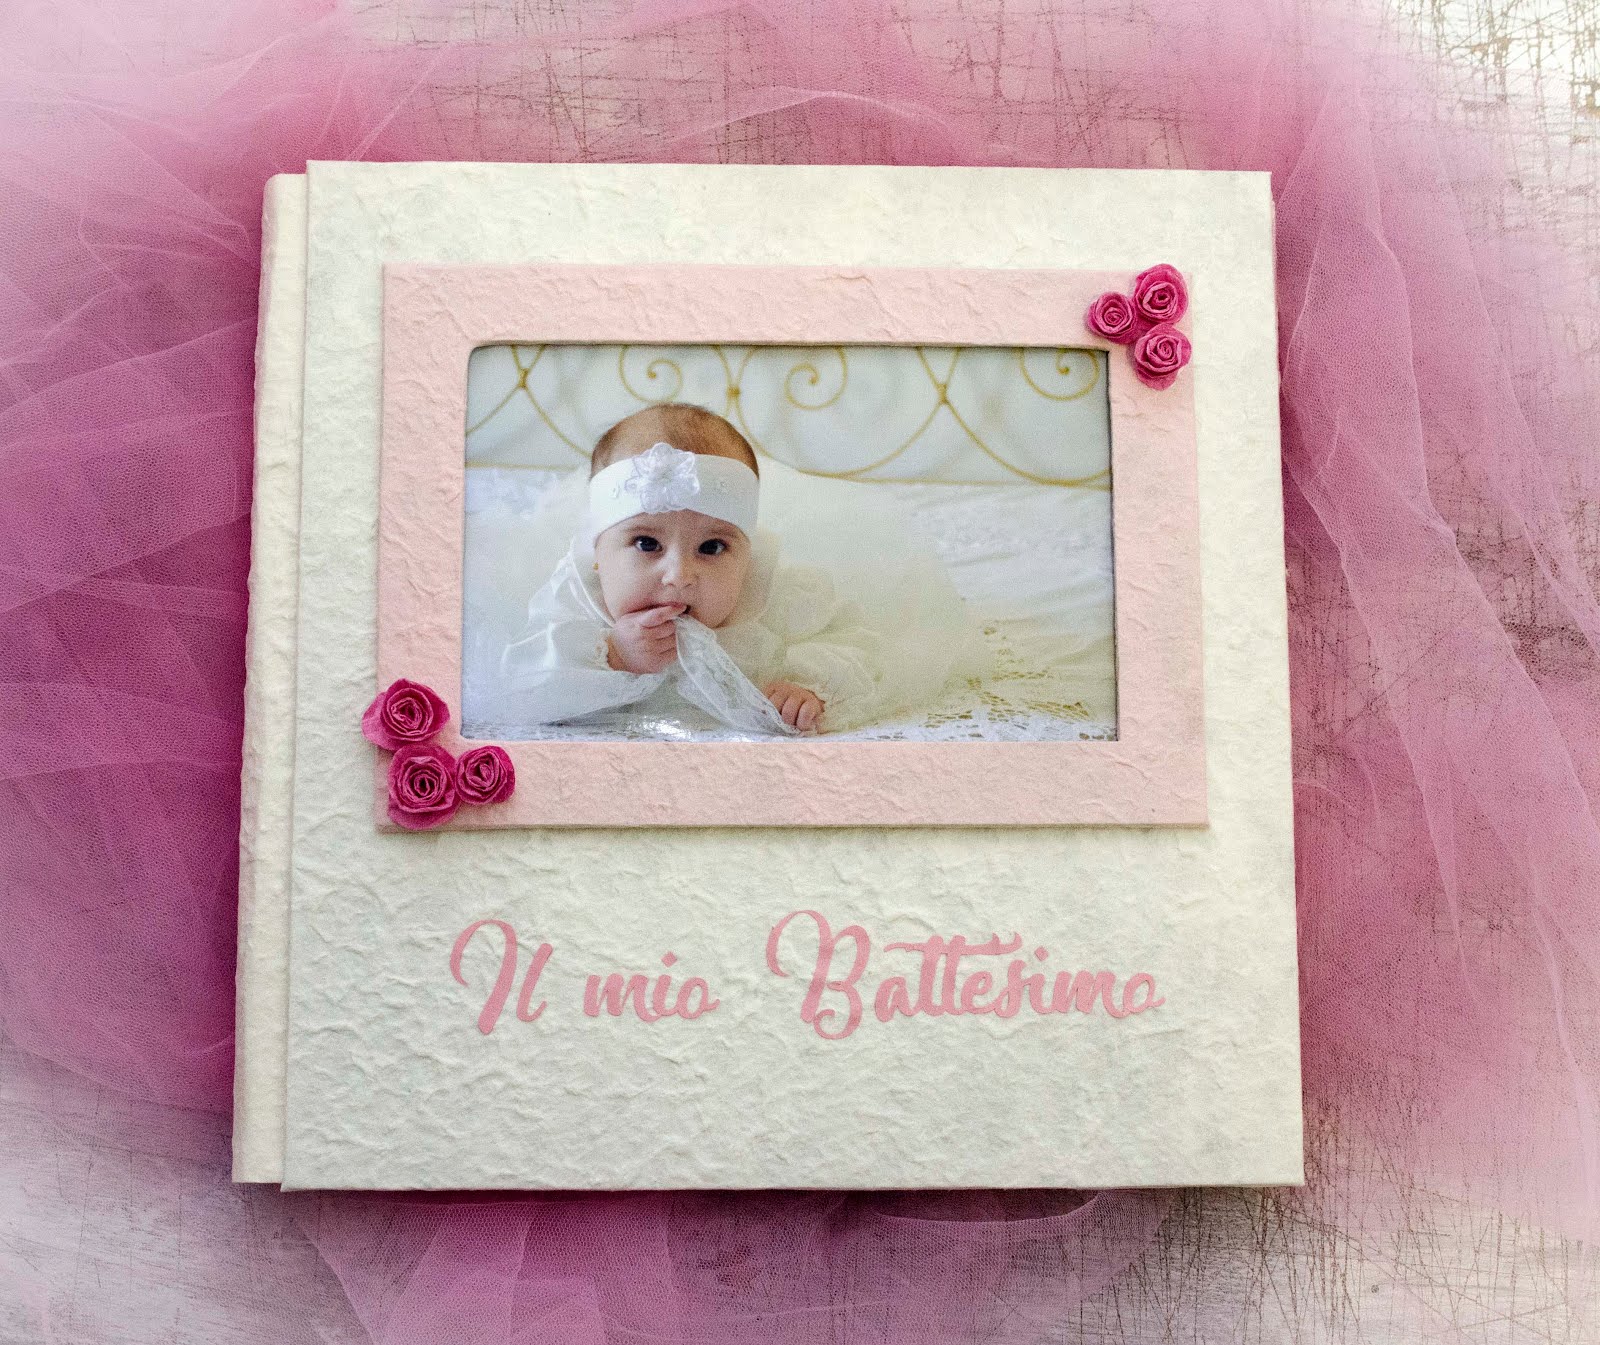 Vendita album fotografici - blog: Album Battesimo per Caterina Parrinello  ph.